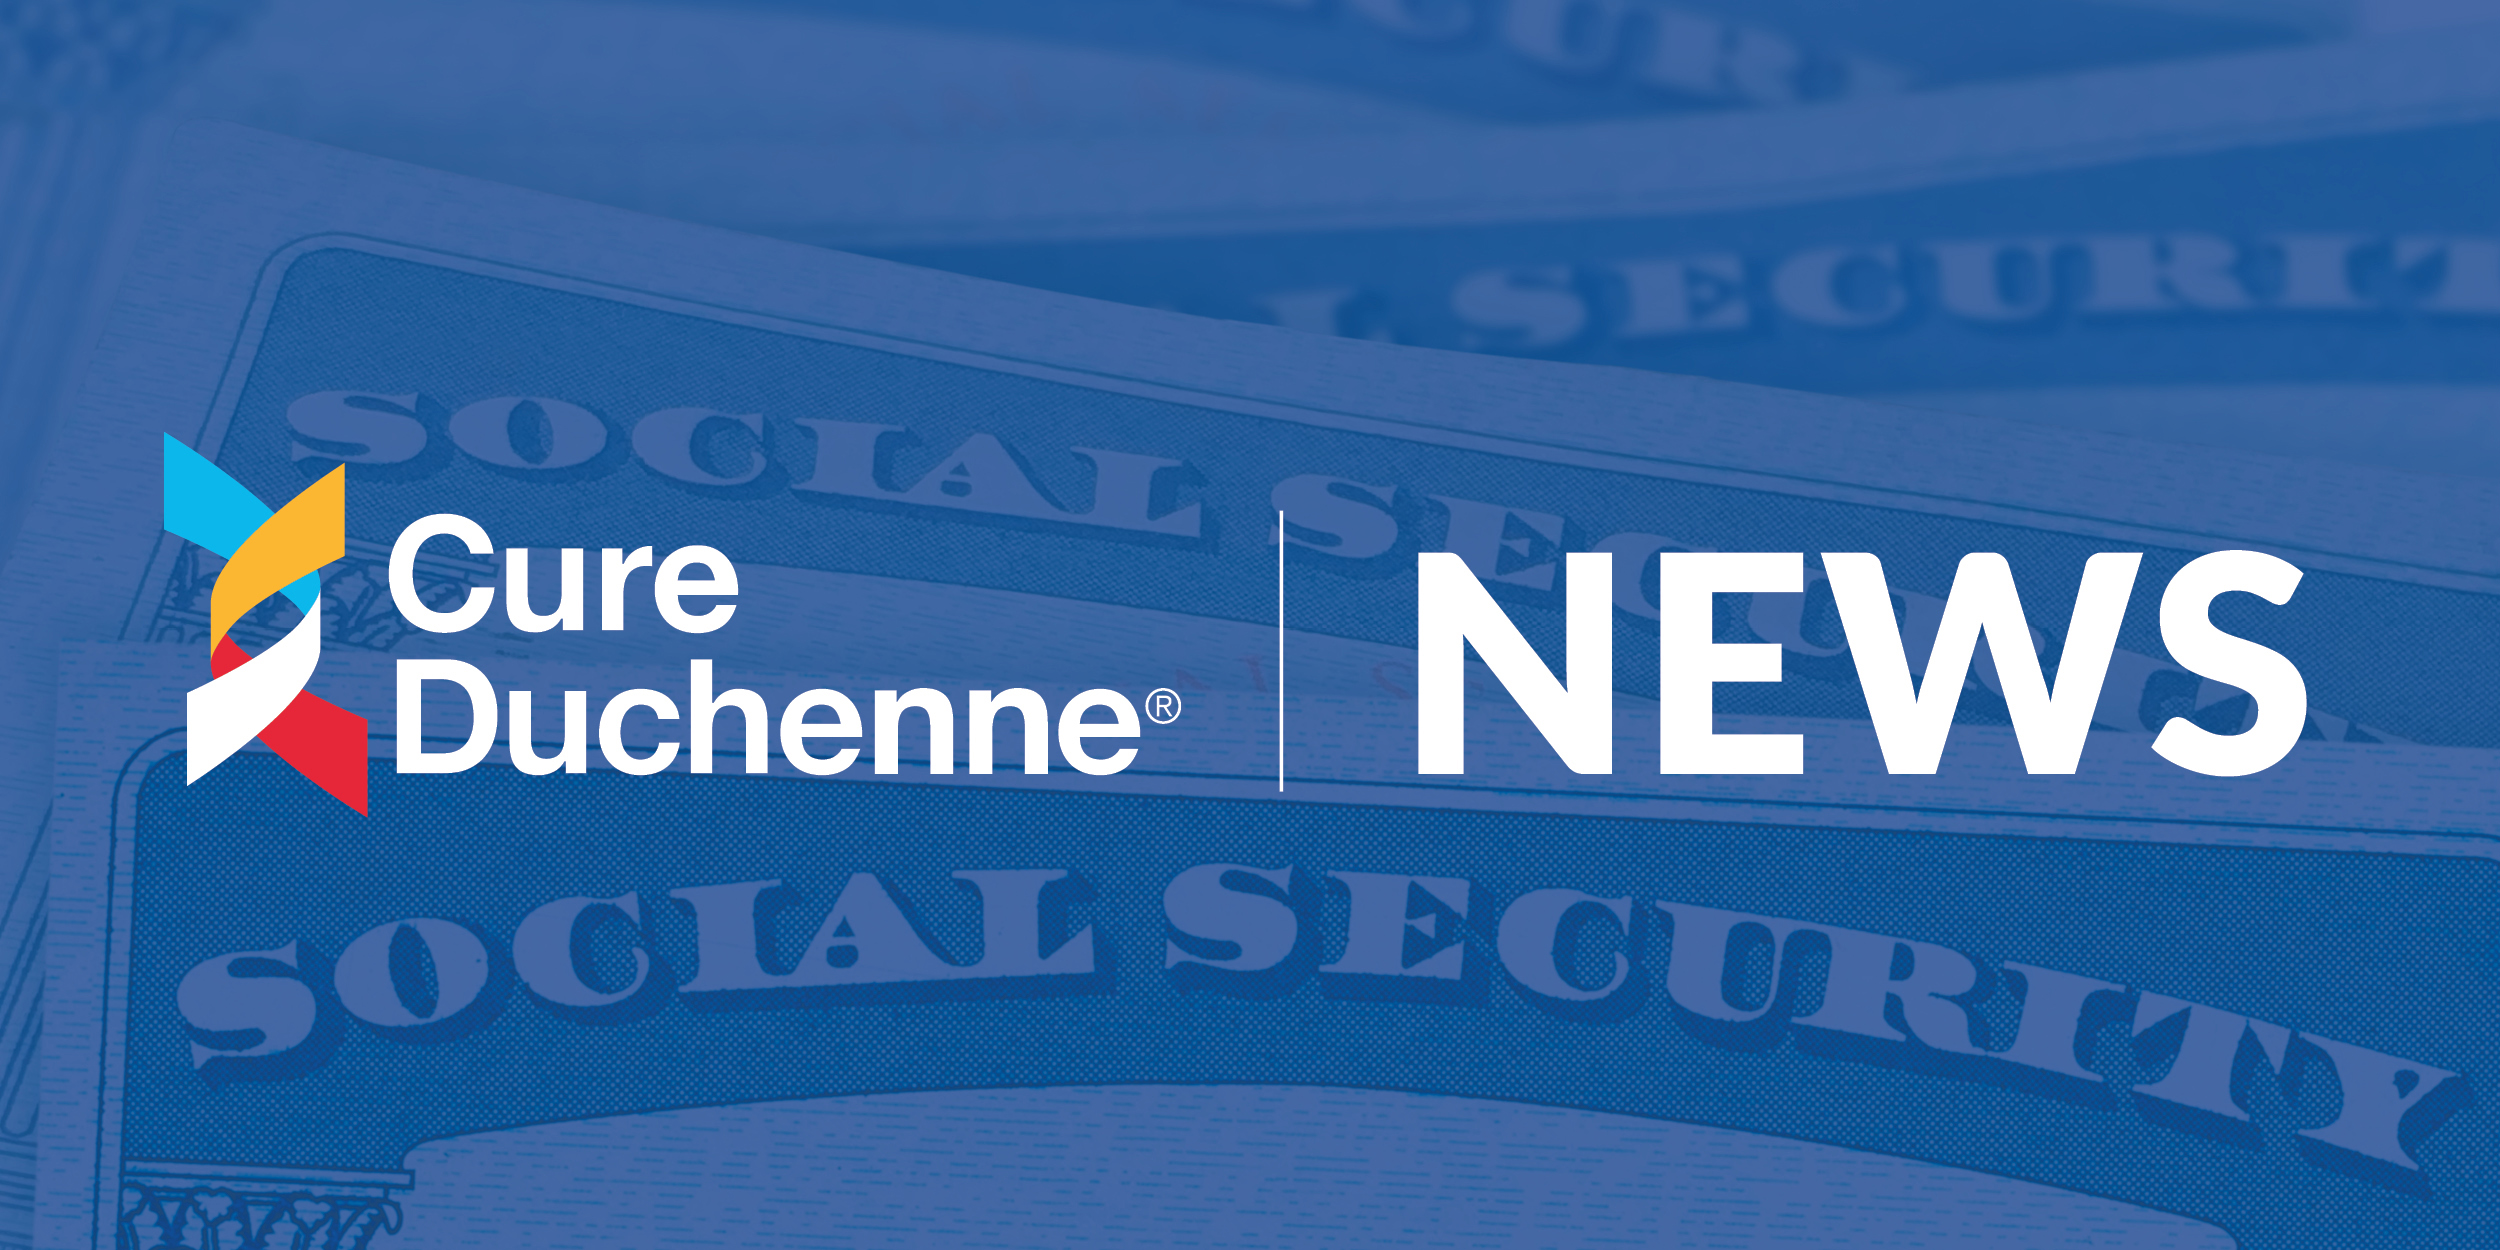 Duchenne SSA Benefits Now Fast-tracked